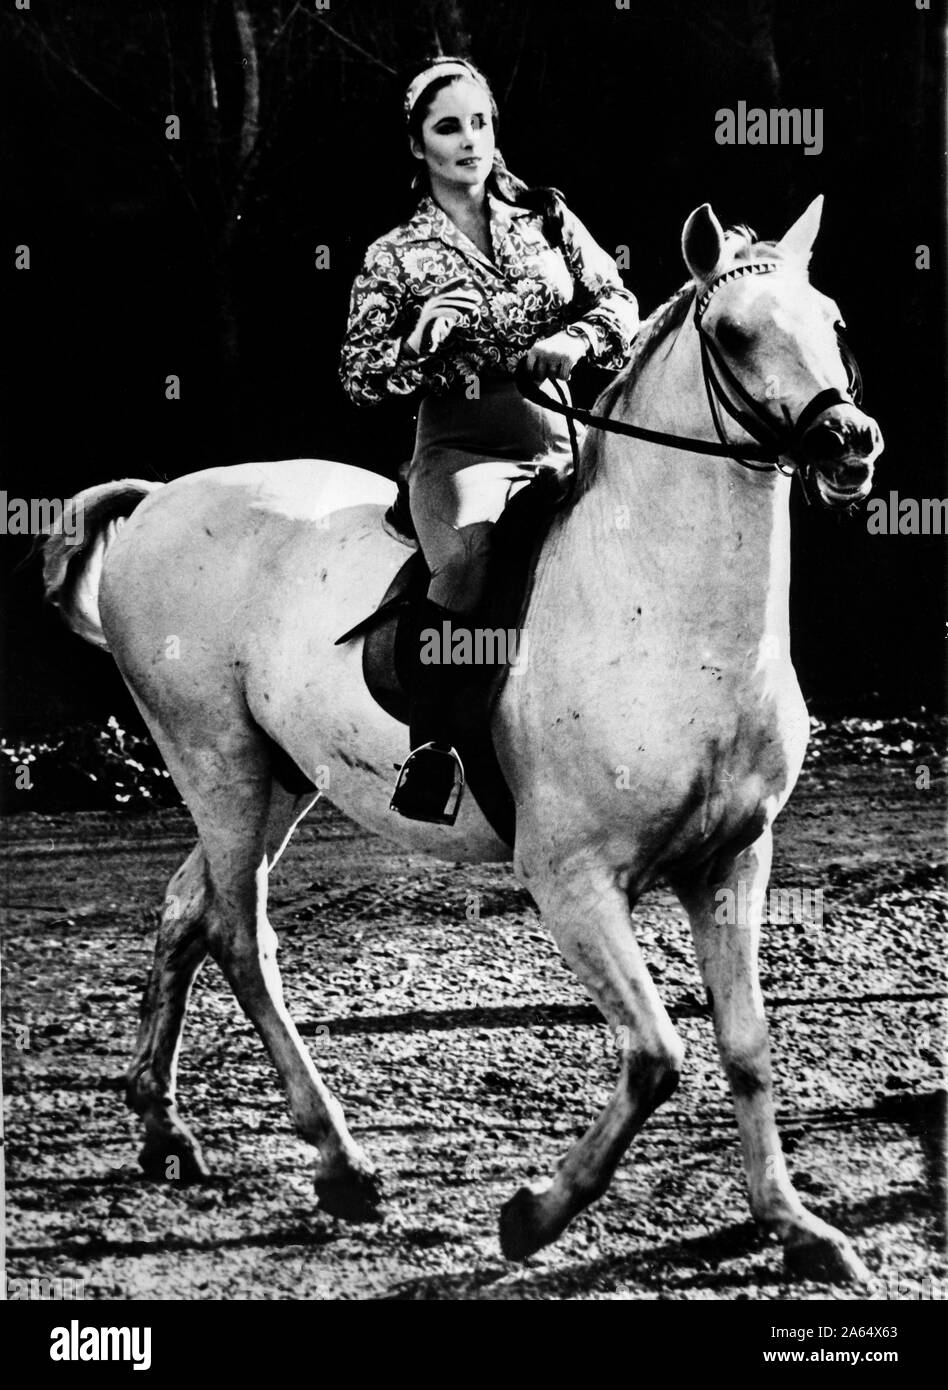 elizabeth taylor on horse, 1960 Stock Photo